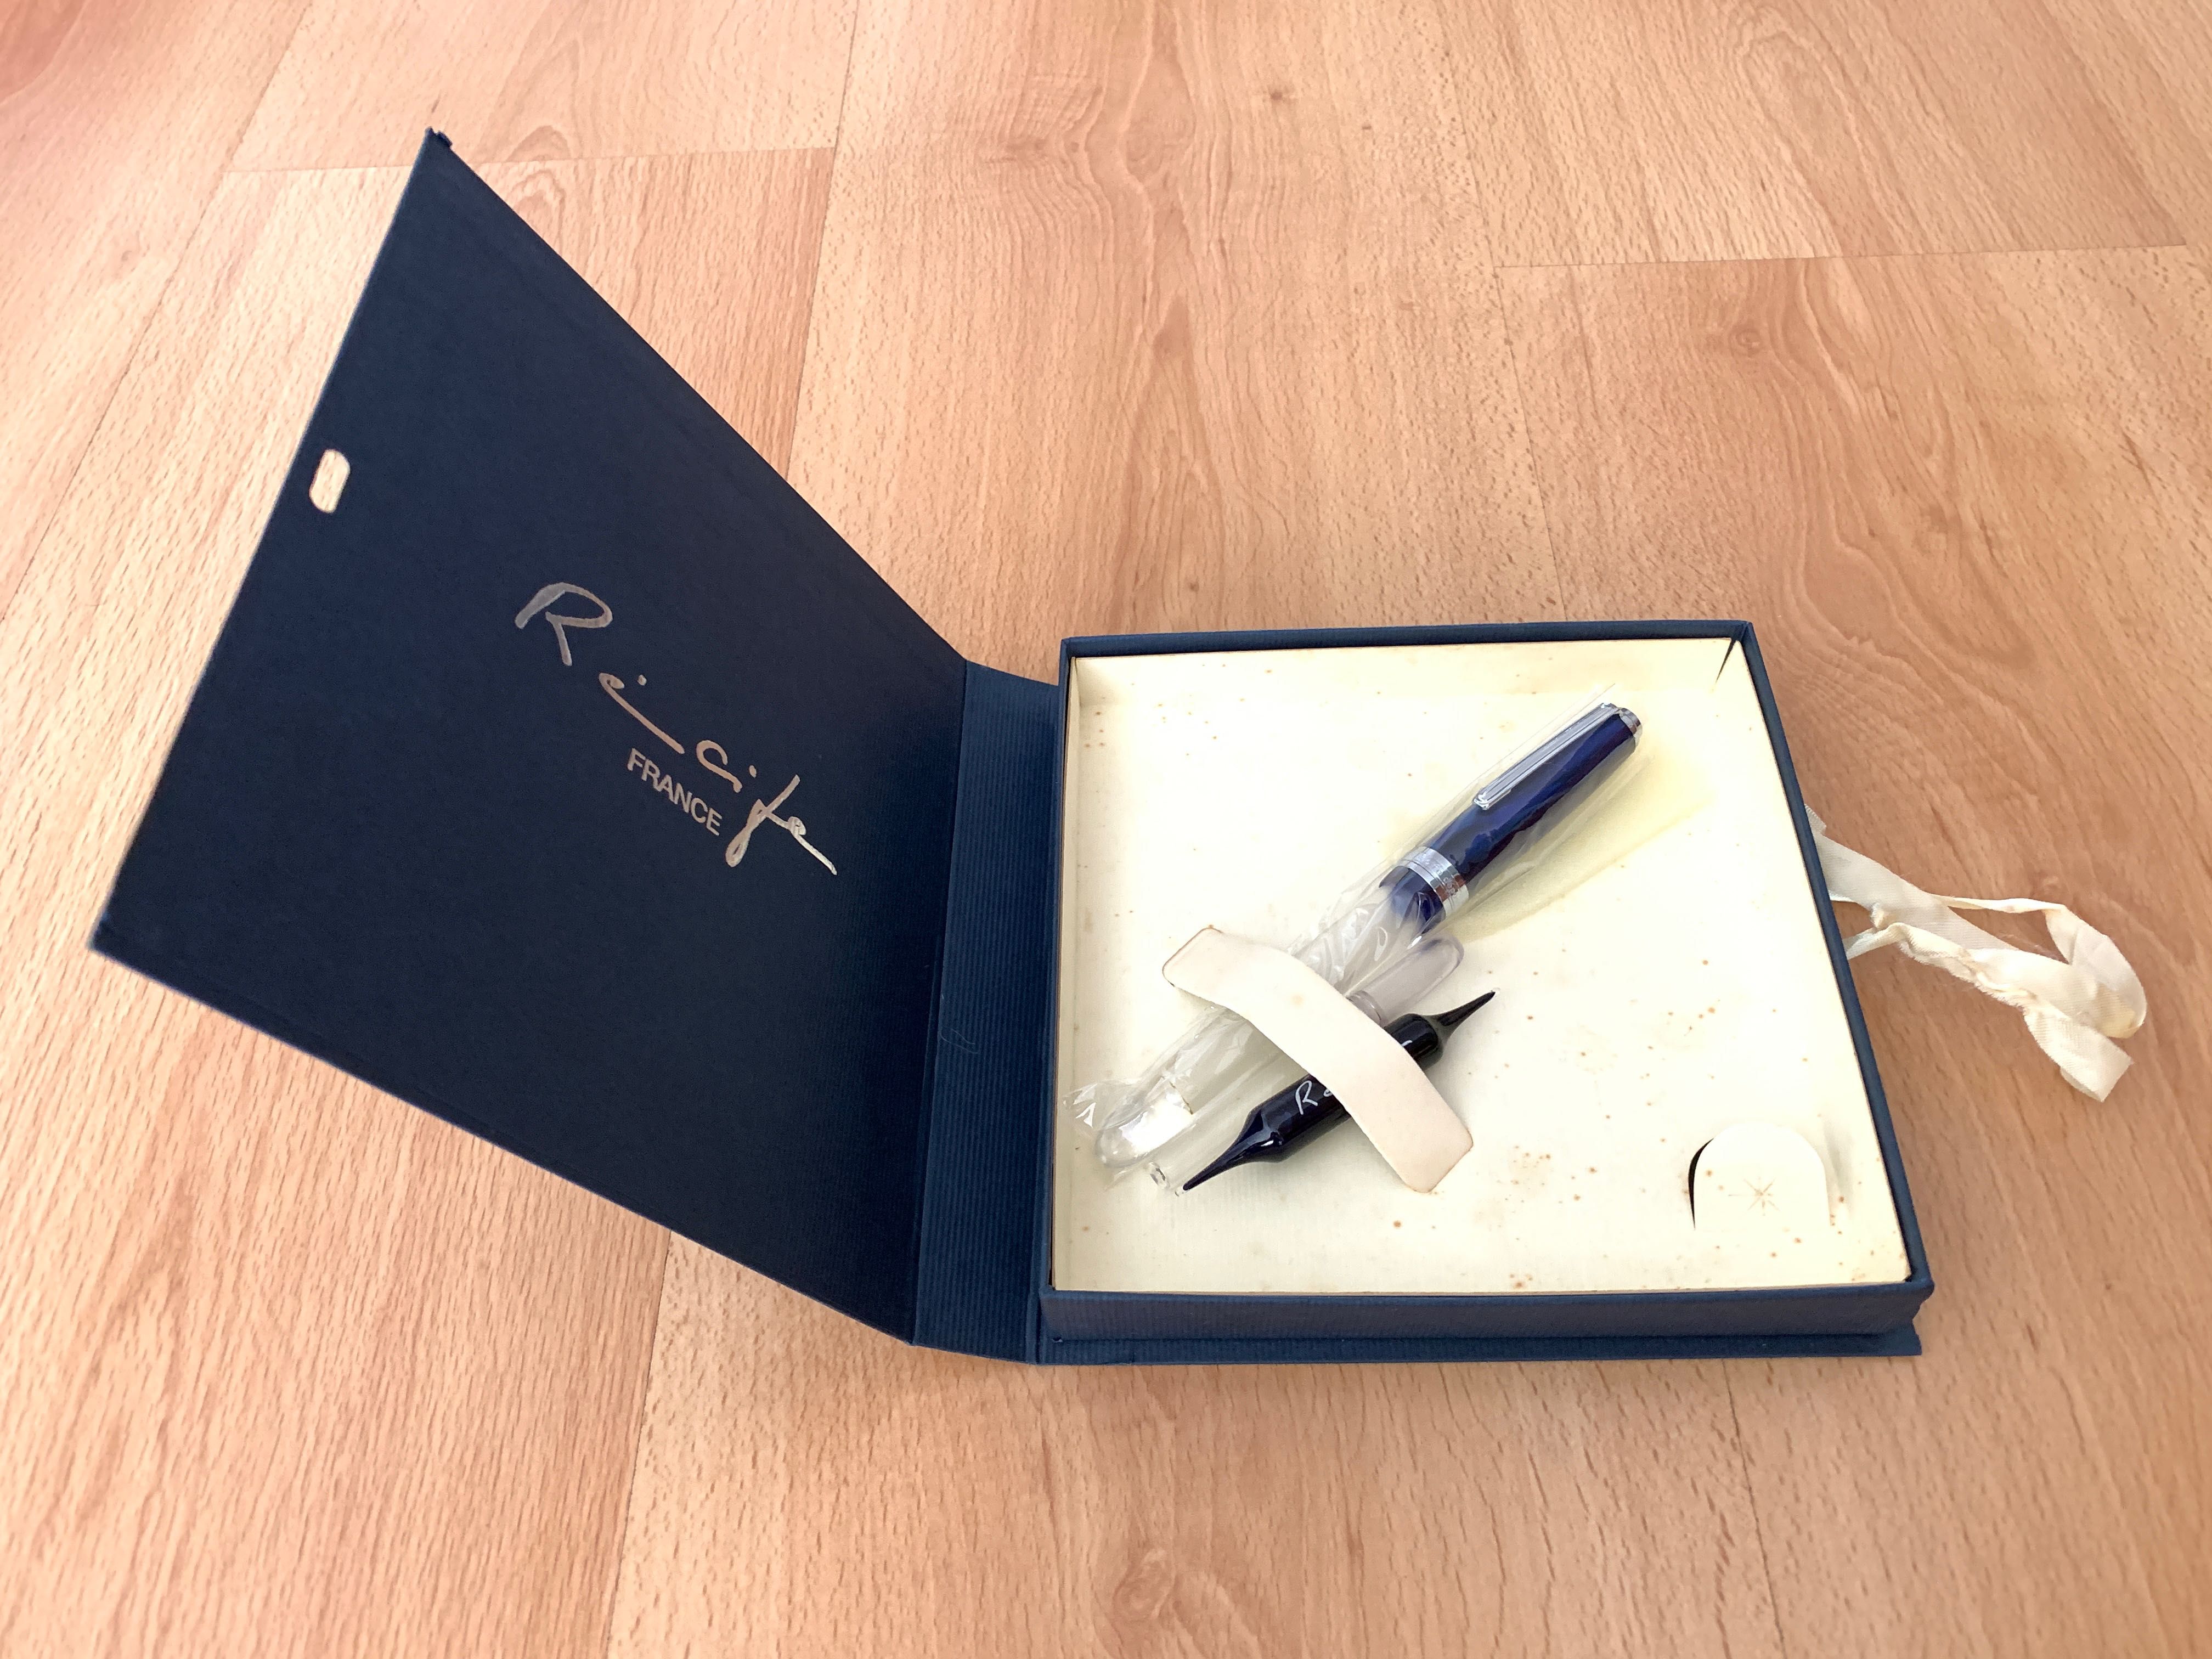 Caneta tinta permanente Recife Amber Crystal azul com inscrição VW